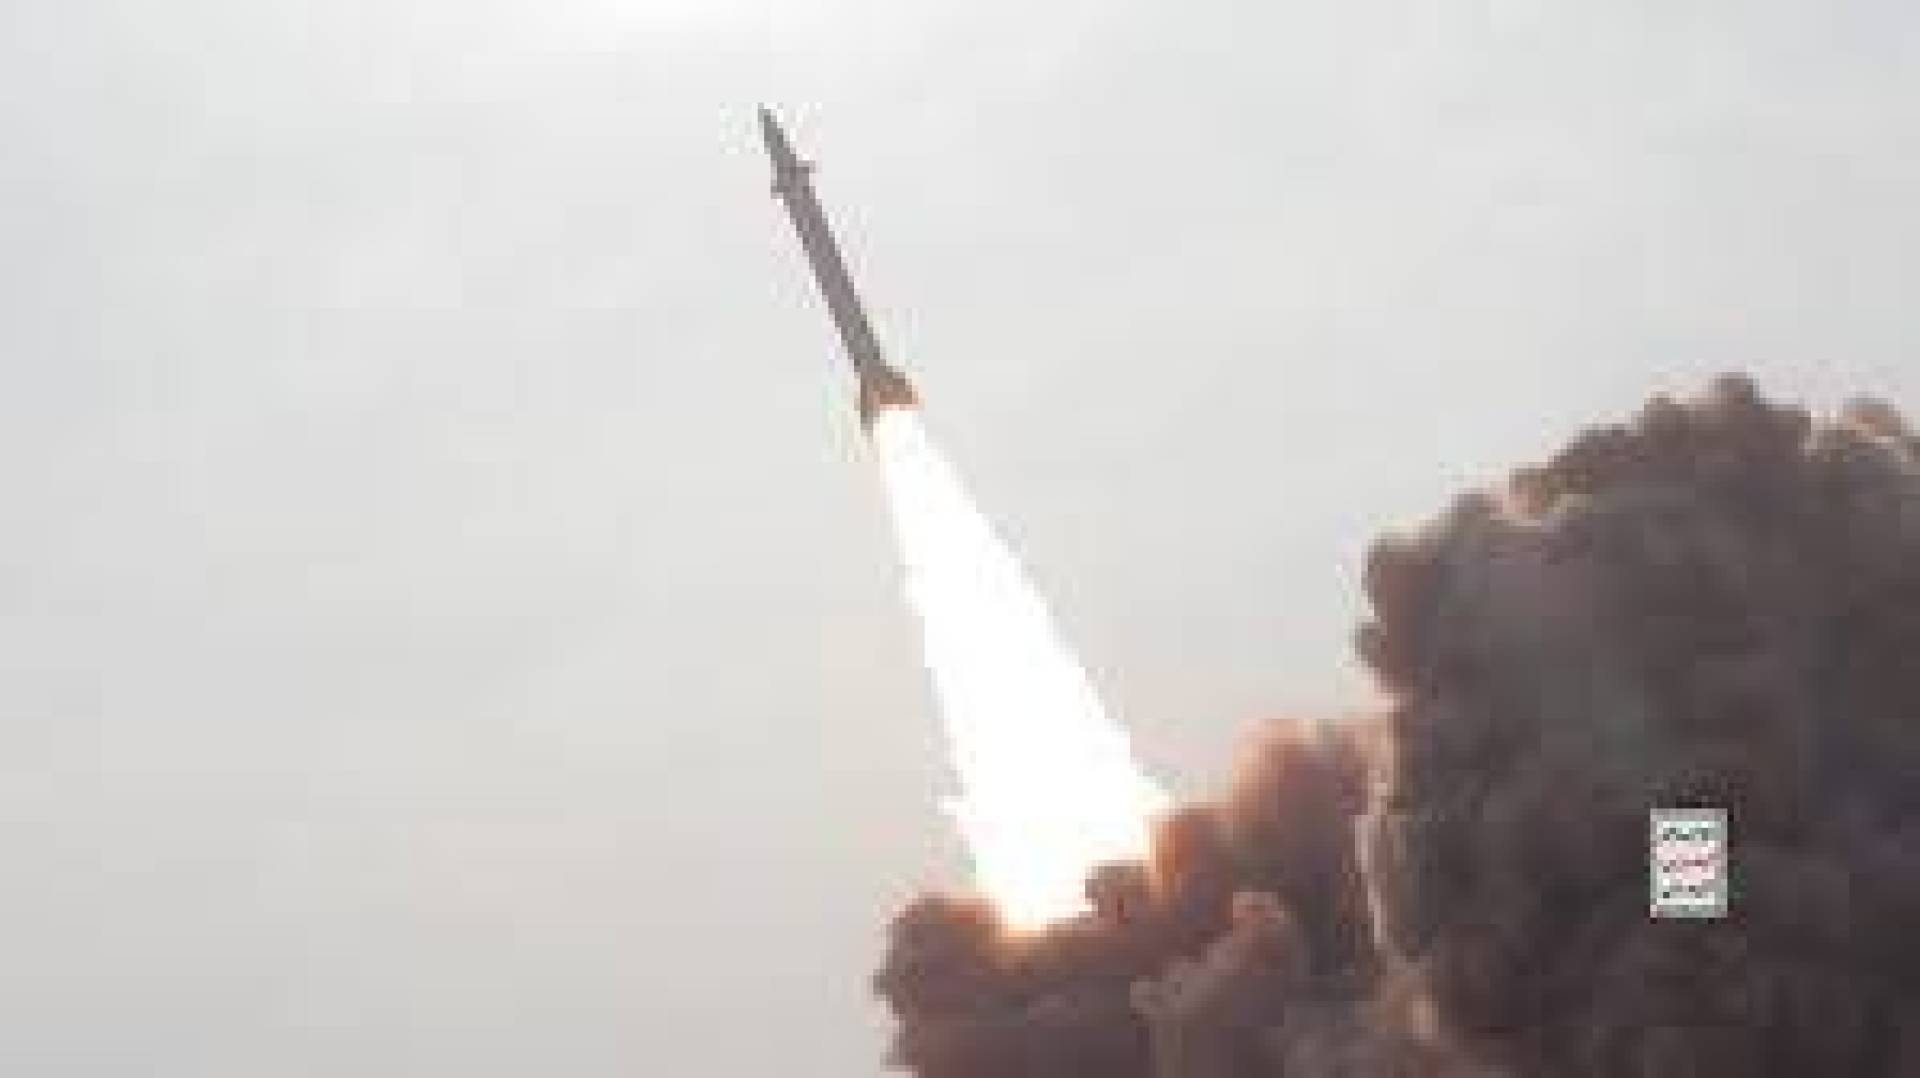 القوات المسلحة اليمنية تُحدث ثورة في تكنولوجيا الصواريخ الباليستية للاستخدام البحري:. ابتكار فريد يُغير قواعد اللعبة في ساحة المعركة